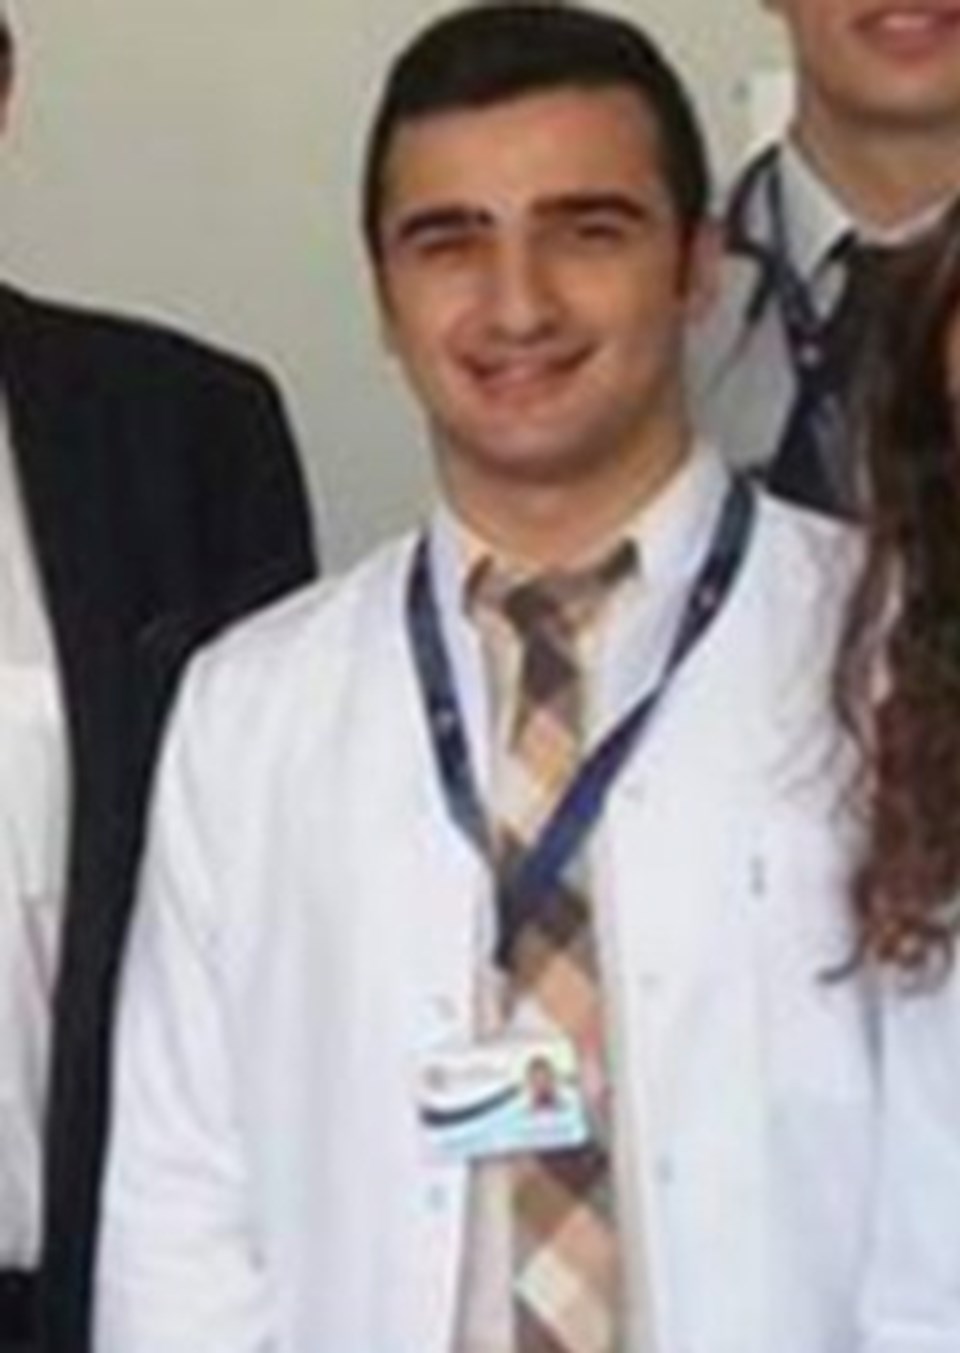 İzmir'de asistan doktora jiletli saldırı - 1